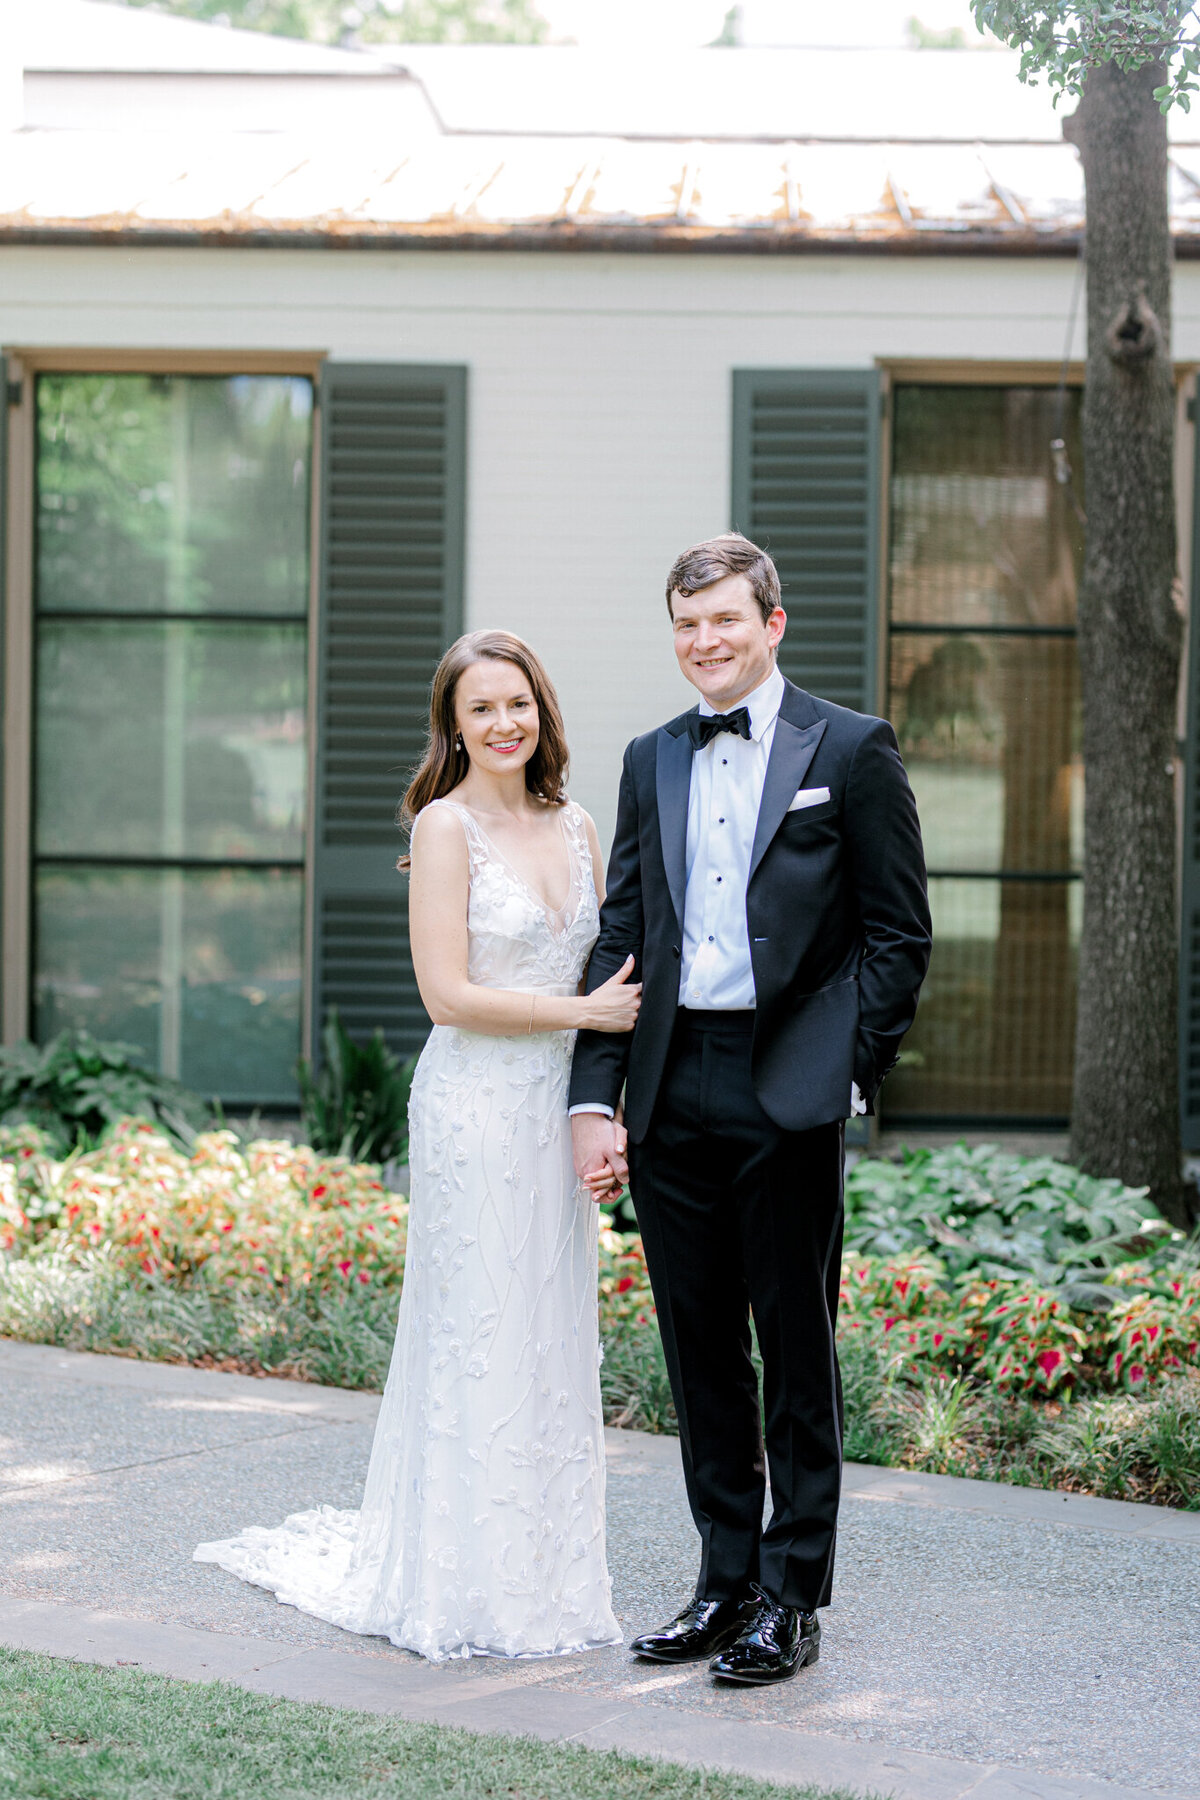 Gena & Matt's Wedding at the Dallas Arboretum | Dallas Wedding Photographer | Sami Kathryn Photography-88